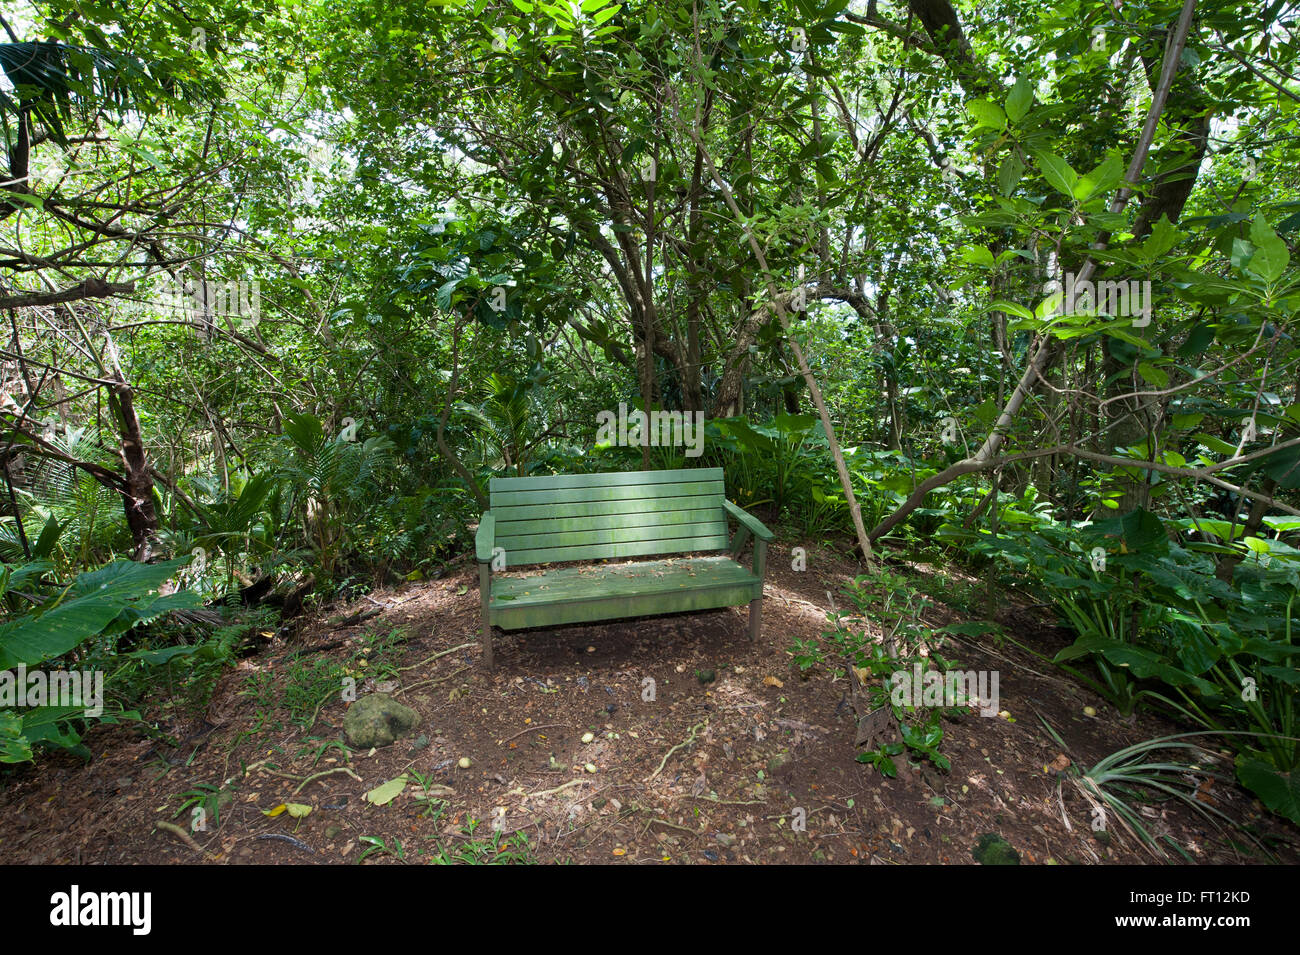 Banco di verde in una foresta tropicale, Pitcairn, Pitcairn gruppo di isole, British territorio di oltremare, Sud Pacifico Foto Stock